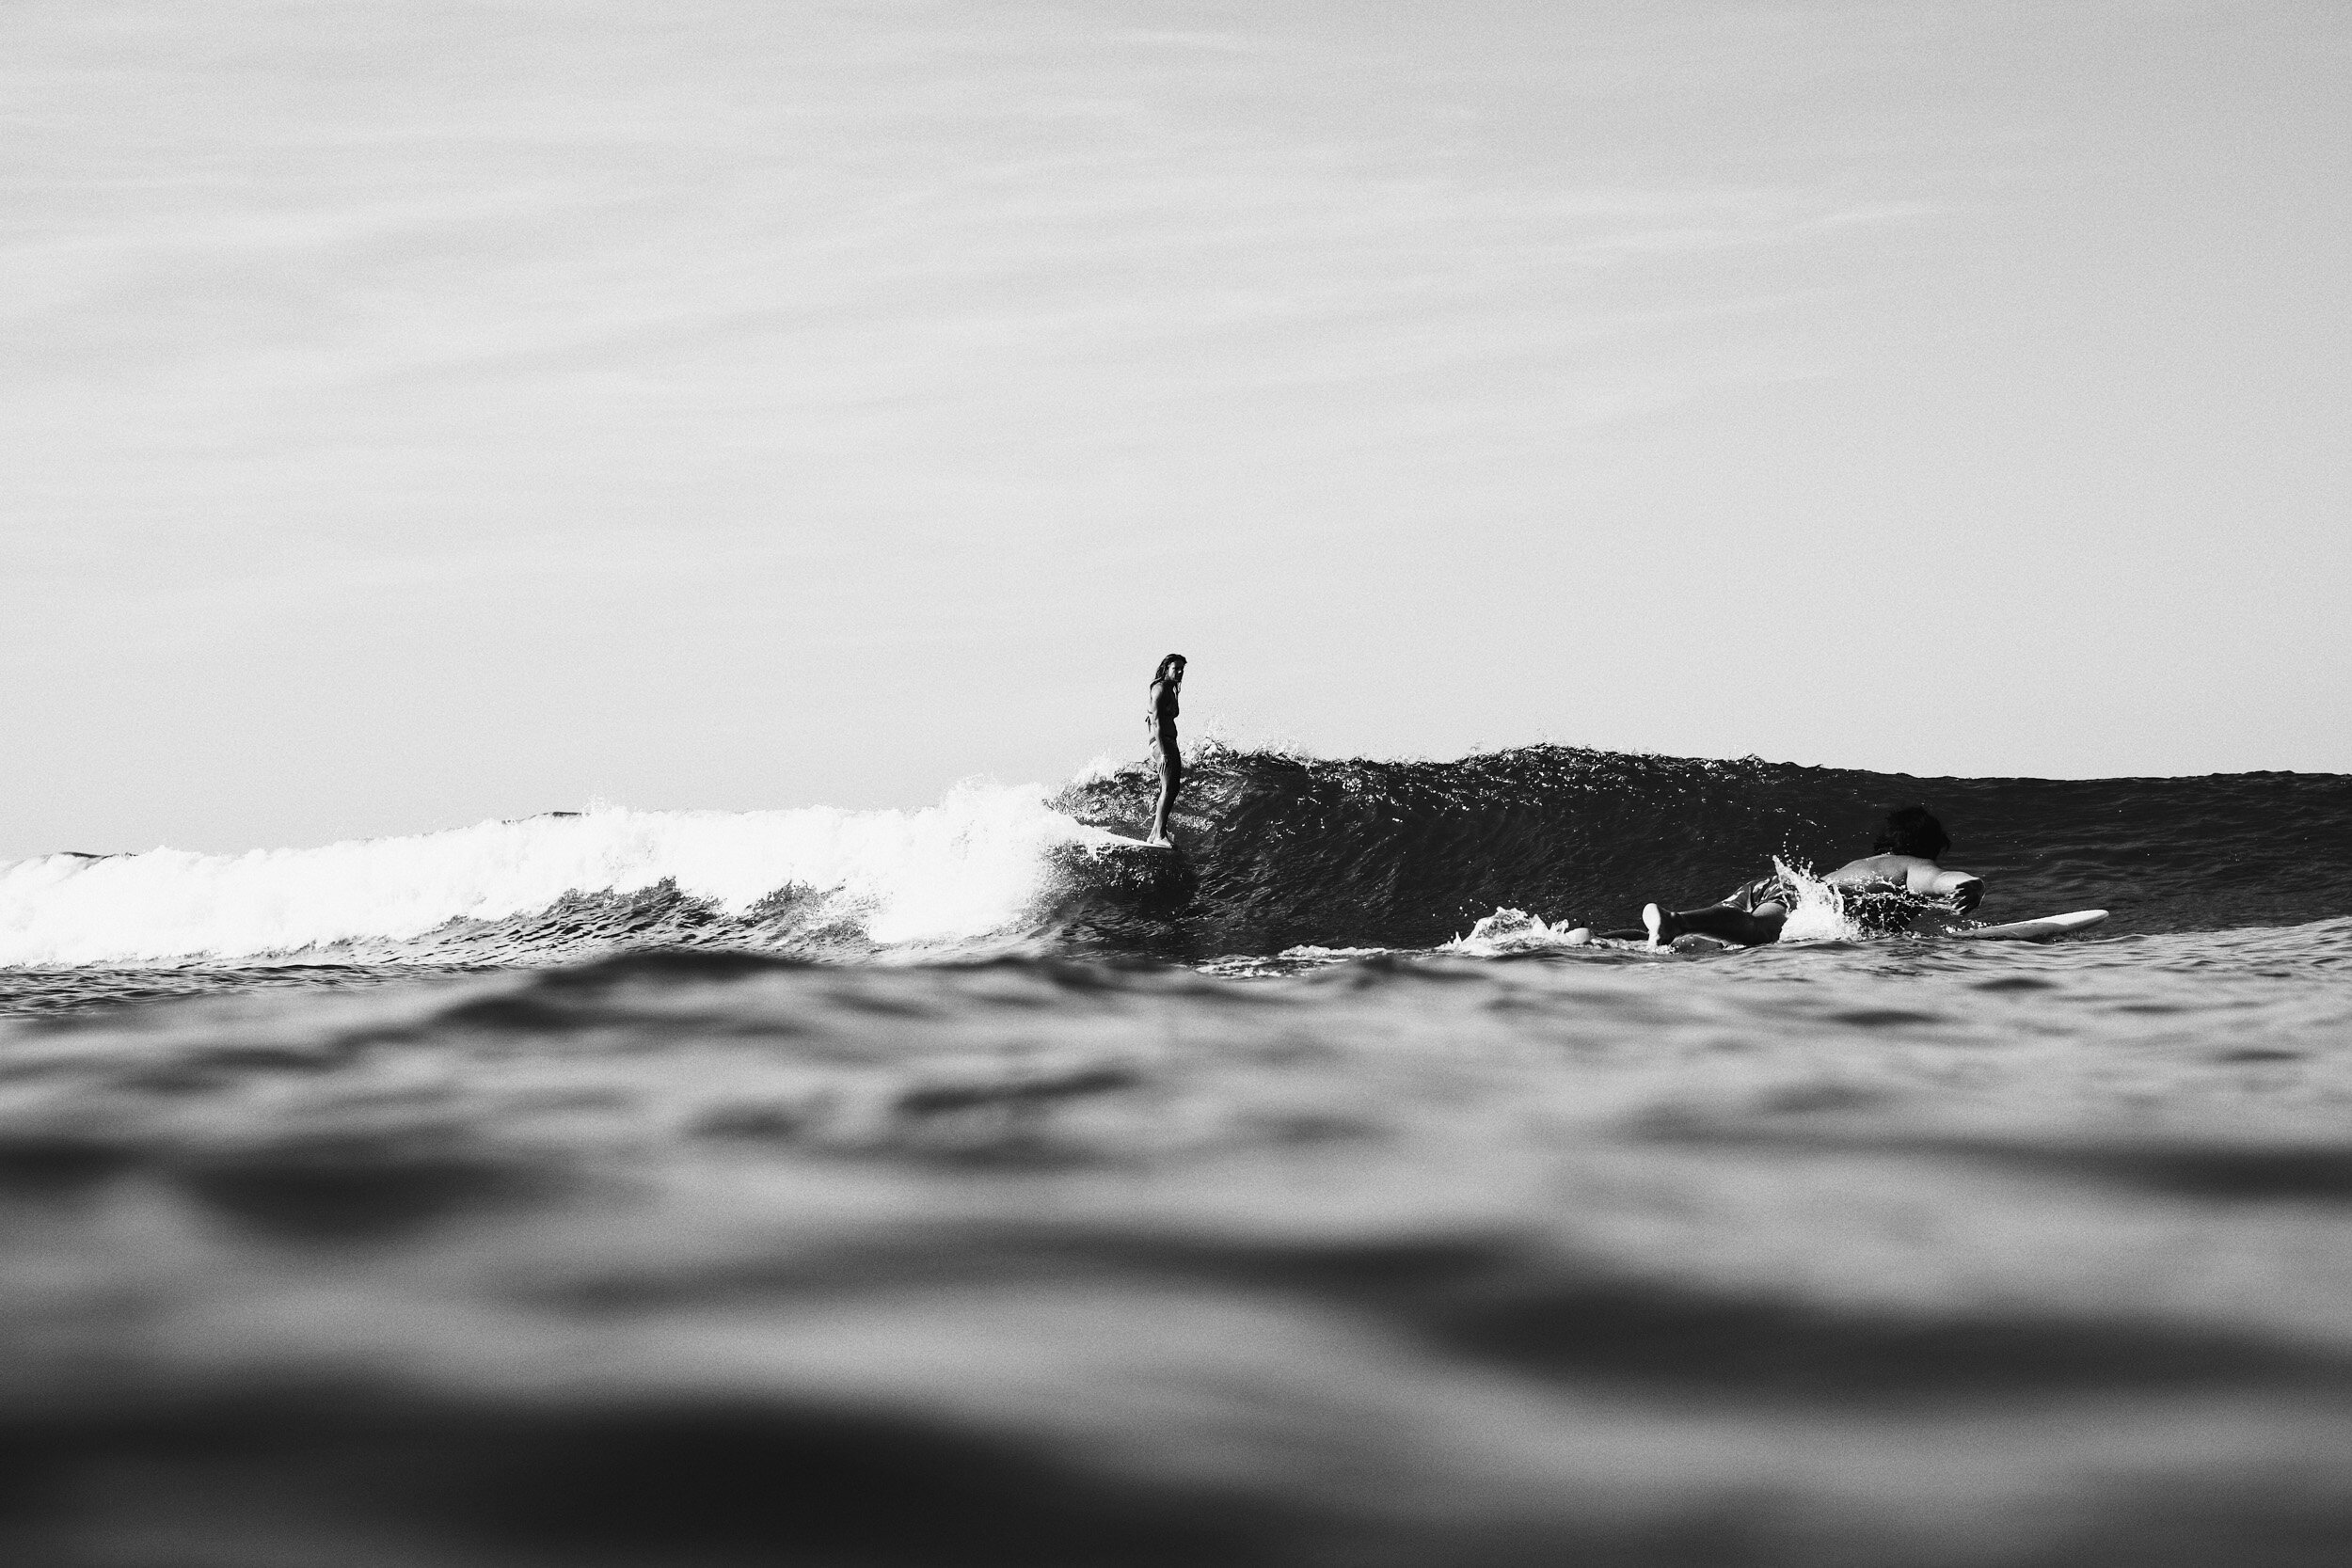 la-saladita-mexico-surf-longboard-fotografia-heiko-bothe-2-3.jpg